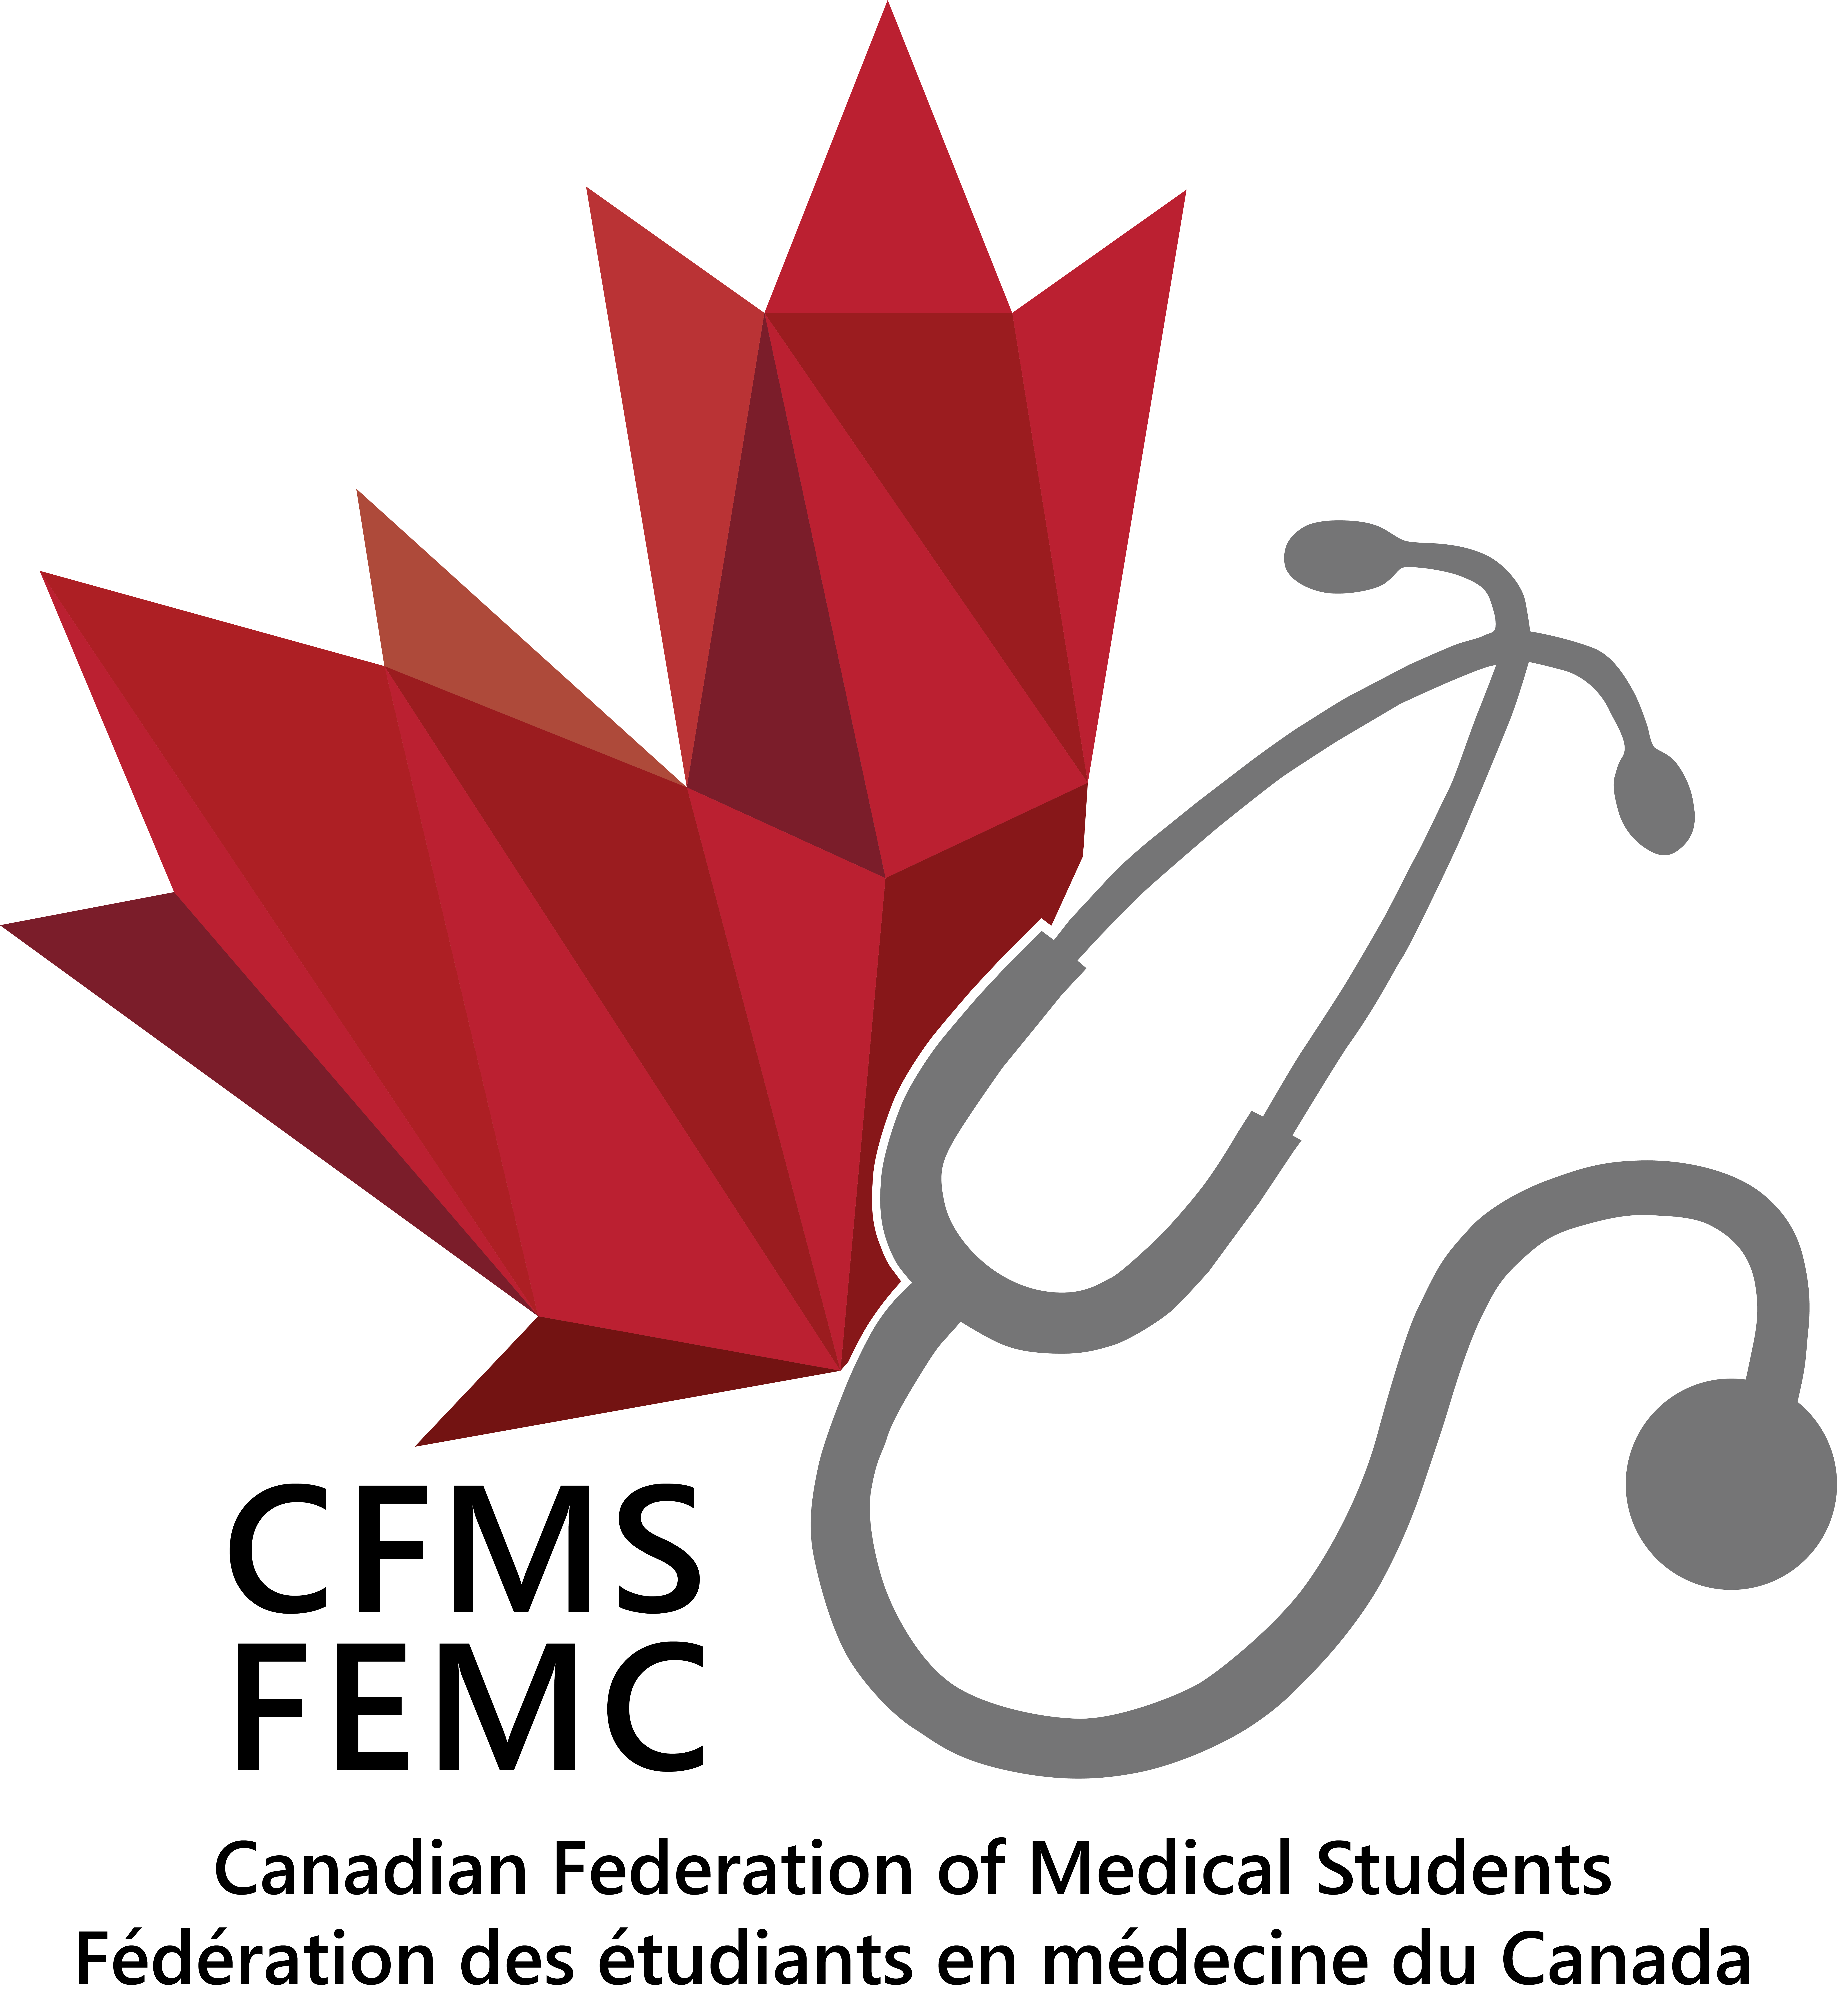 Canadian Federation of Medical Students Logo, Logo de la Fédération canadienne des étudiants en médecine